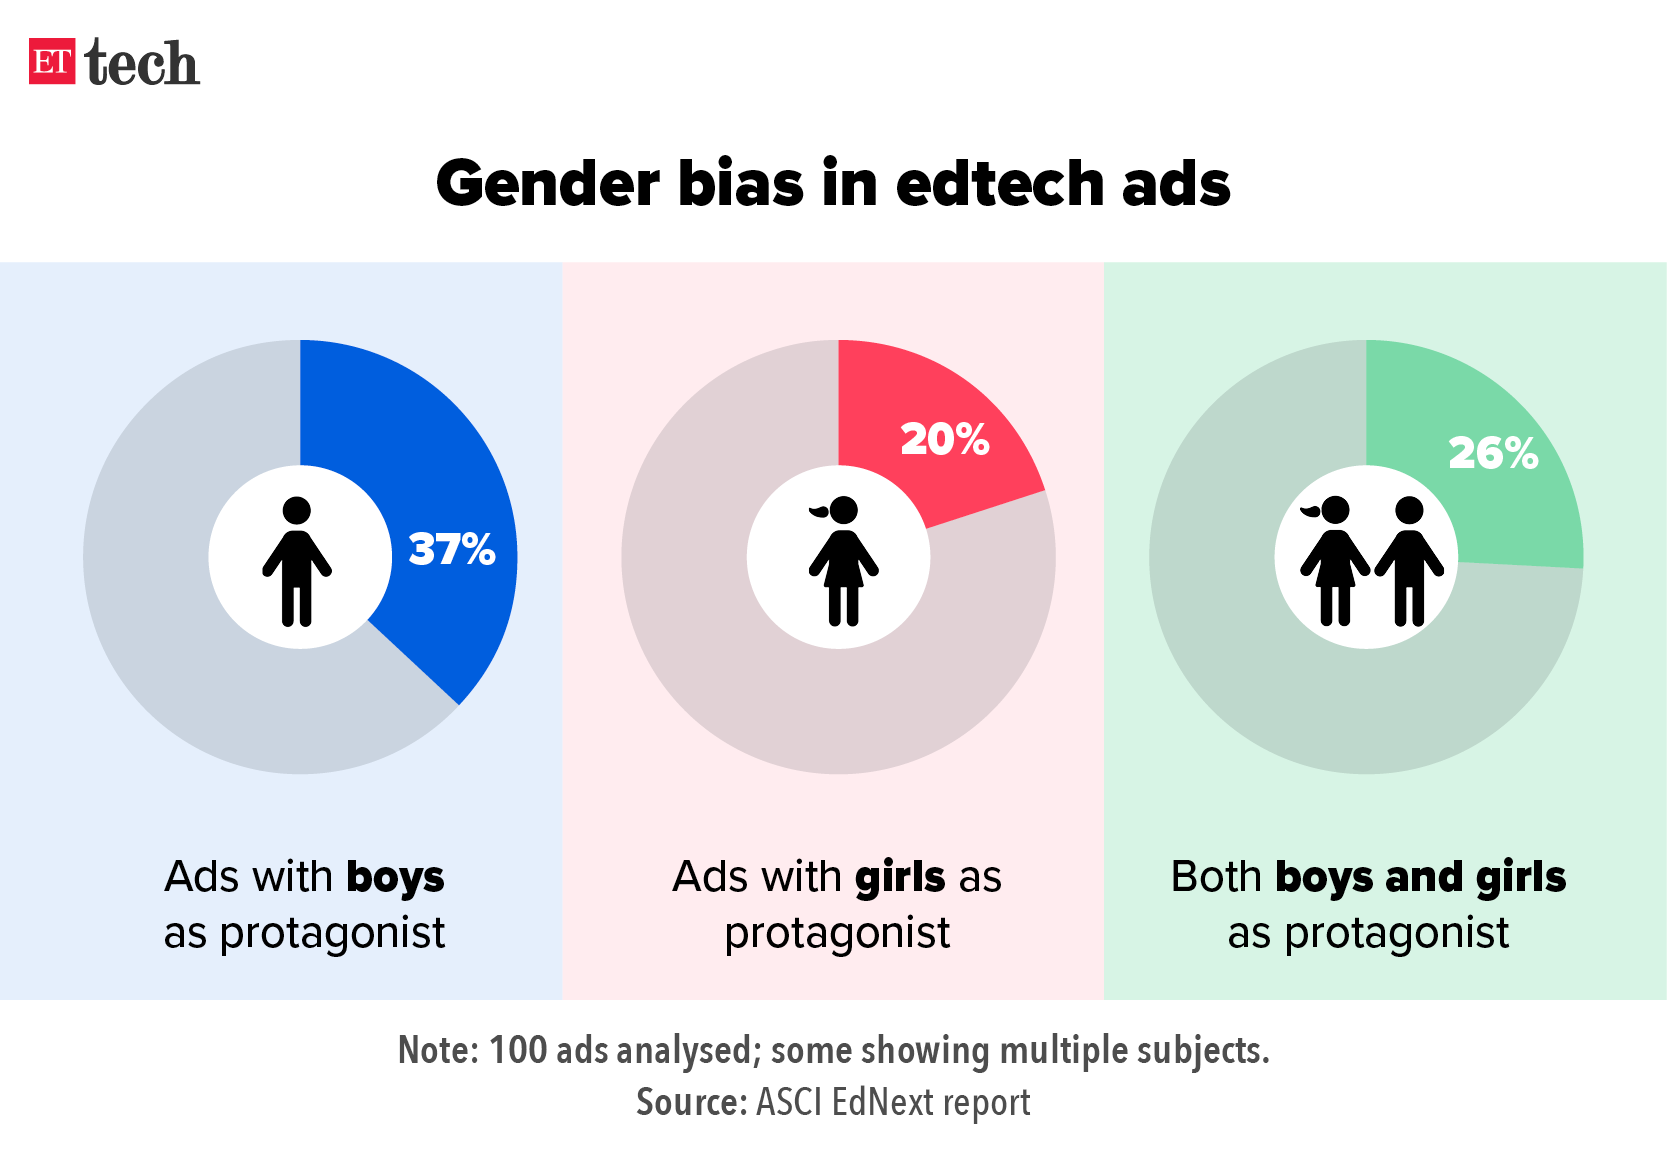 Gender bias in educational advertising